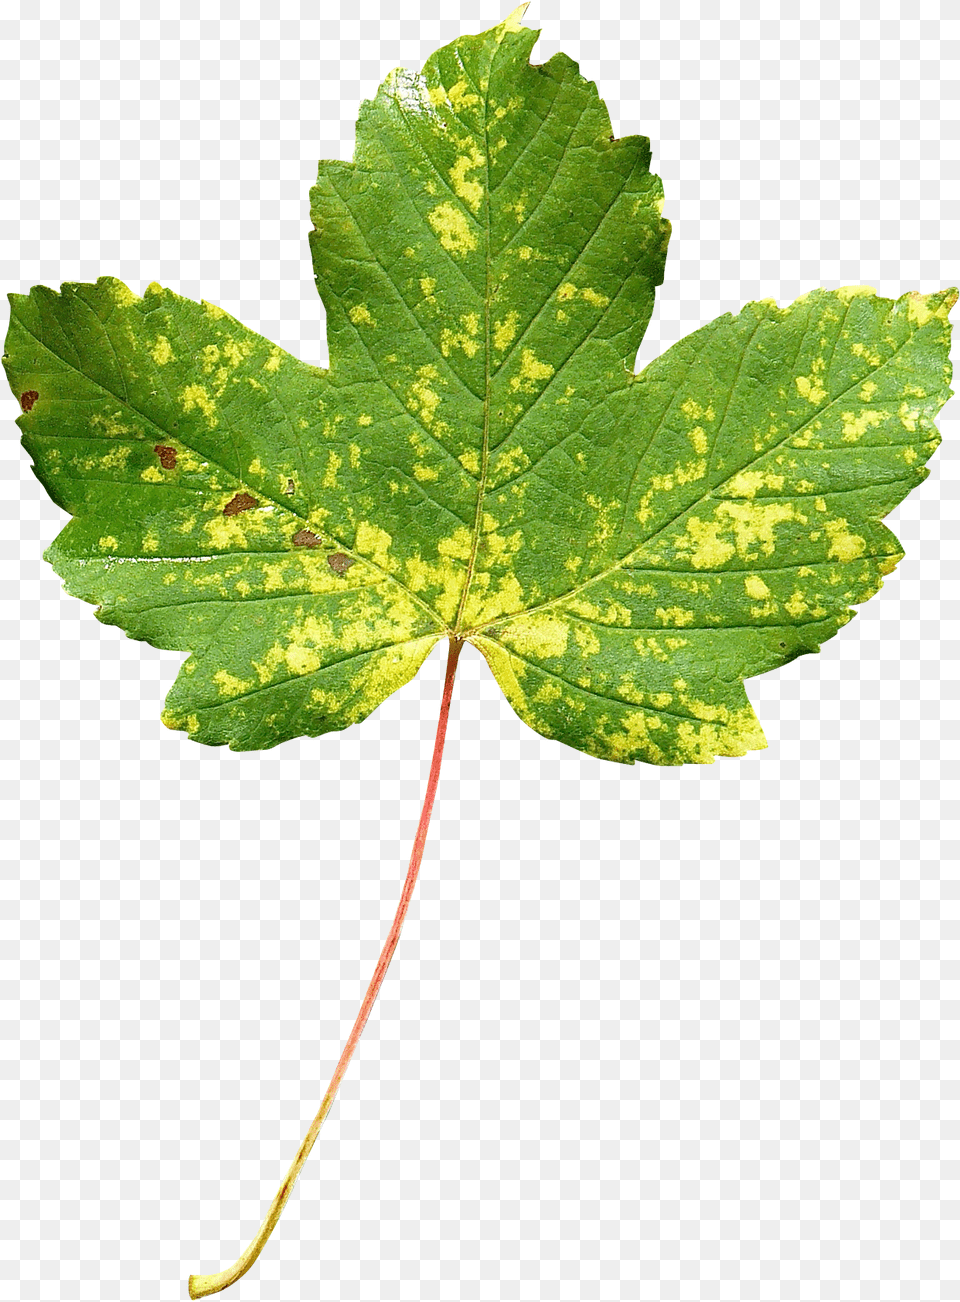 Maple Leaf Transparent Image Transparent Leaf, Plant, Tree Free Png Download